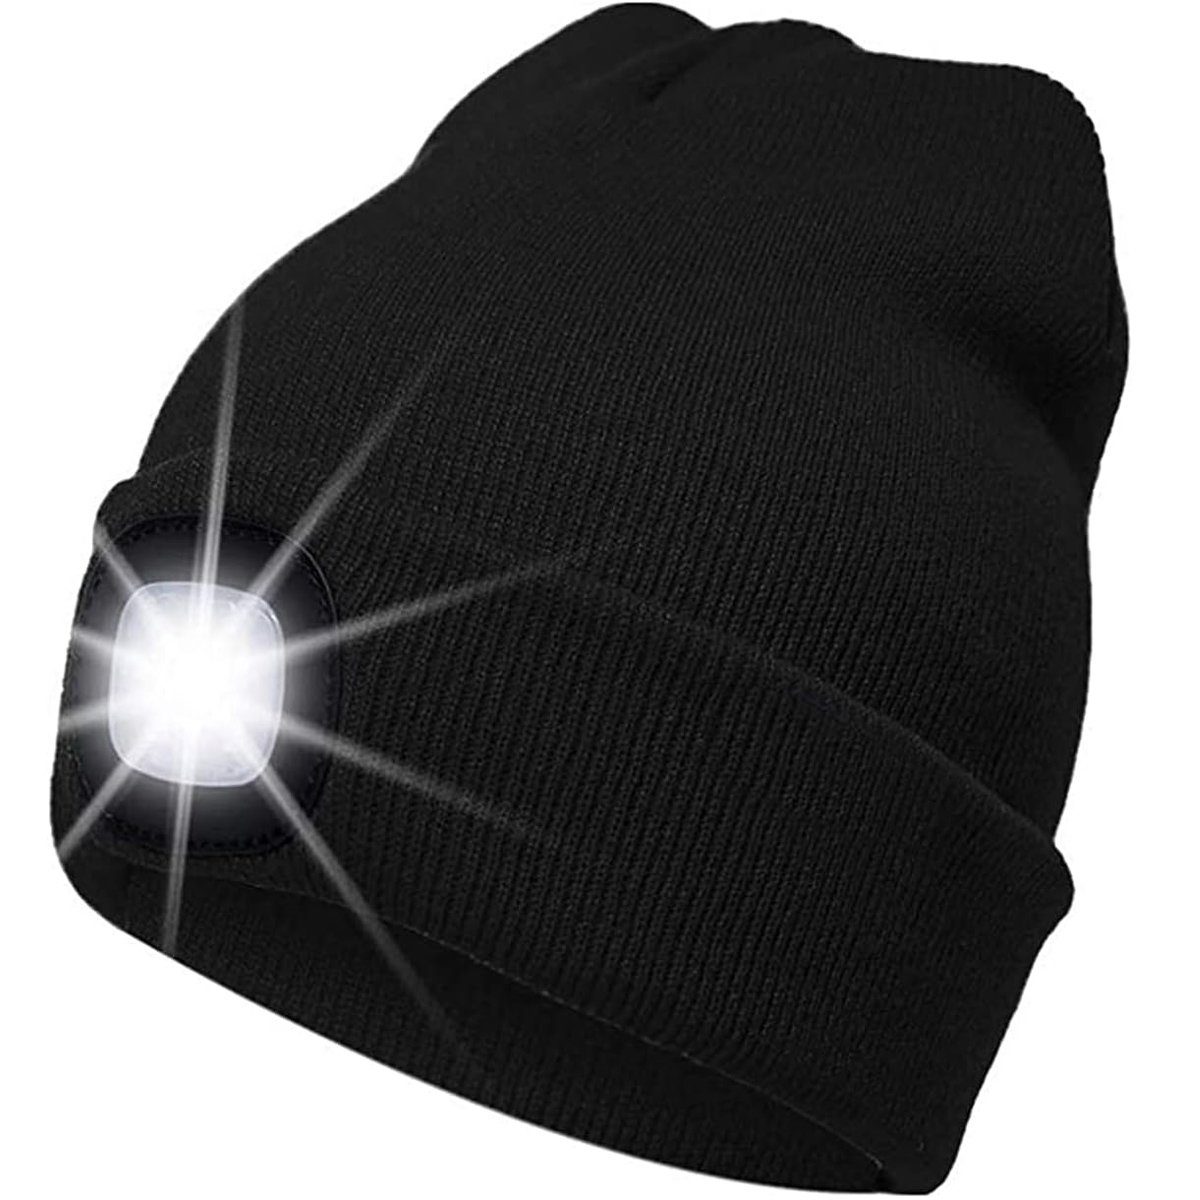 zggzerg LED Stirnlampe LED Beleuchtete Mütze, USB Laufmütze mit Licht Lampe Warme Stirnlampe Schwarz